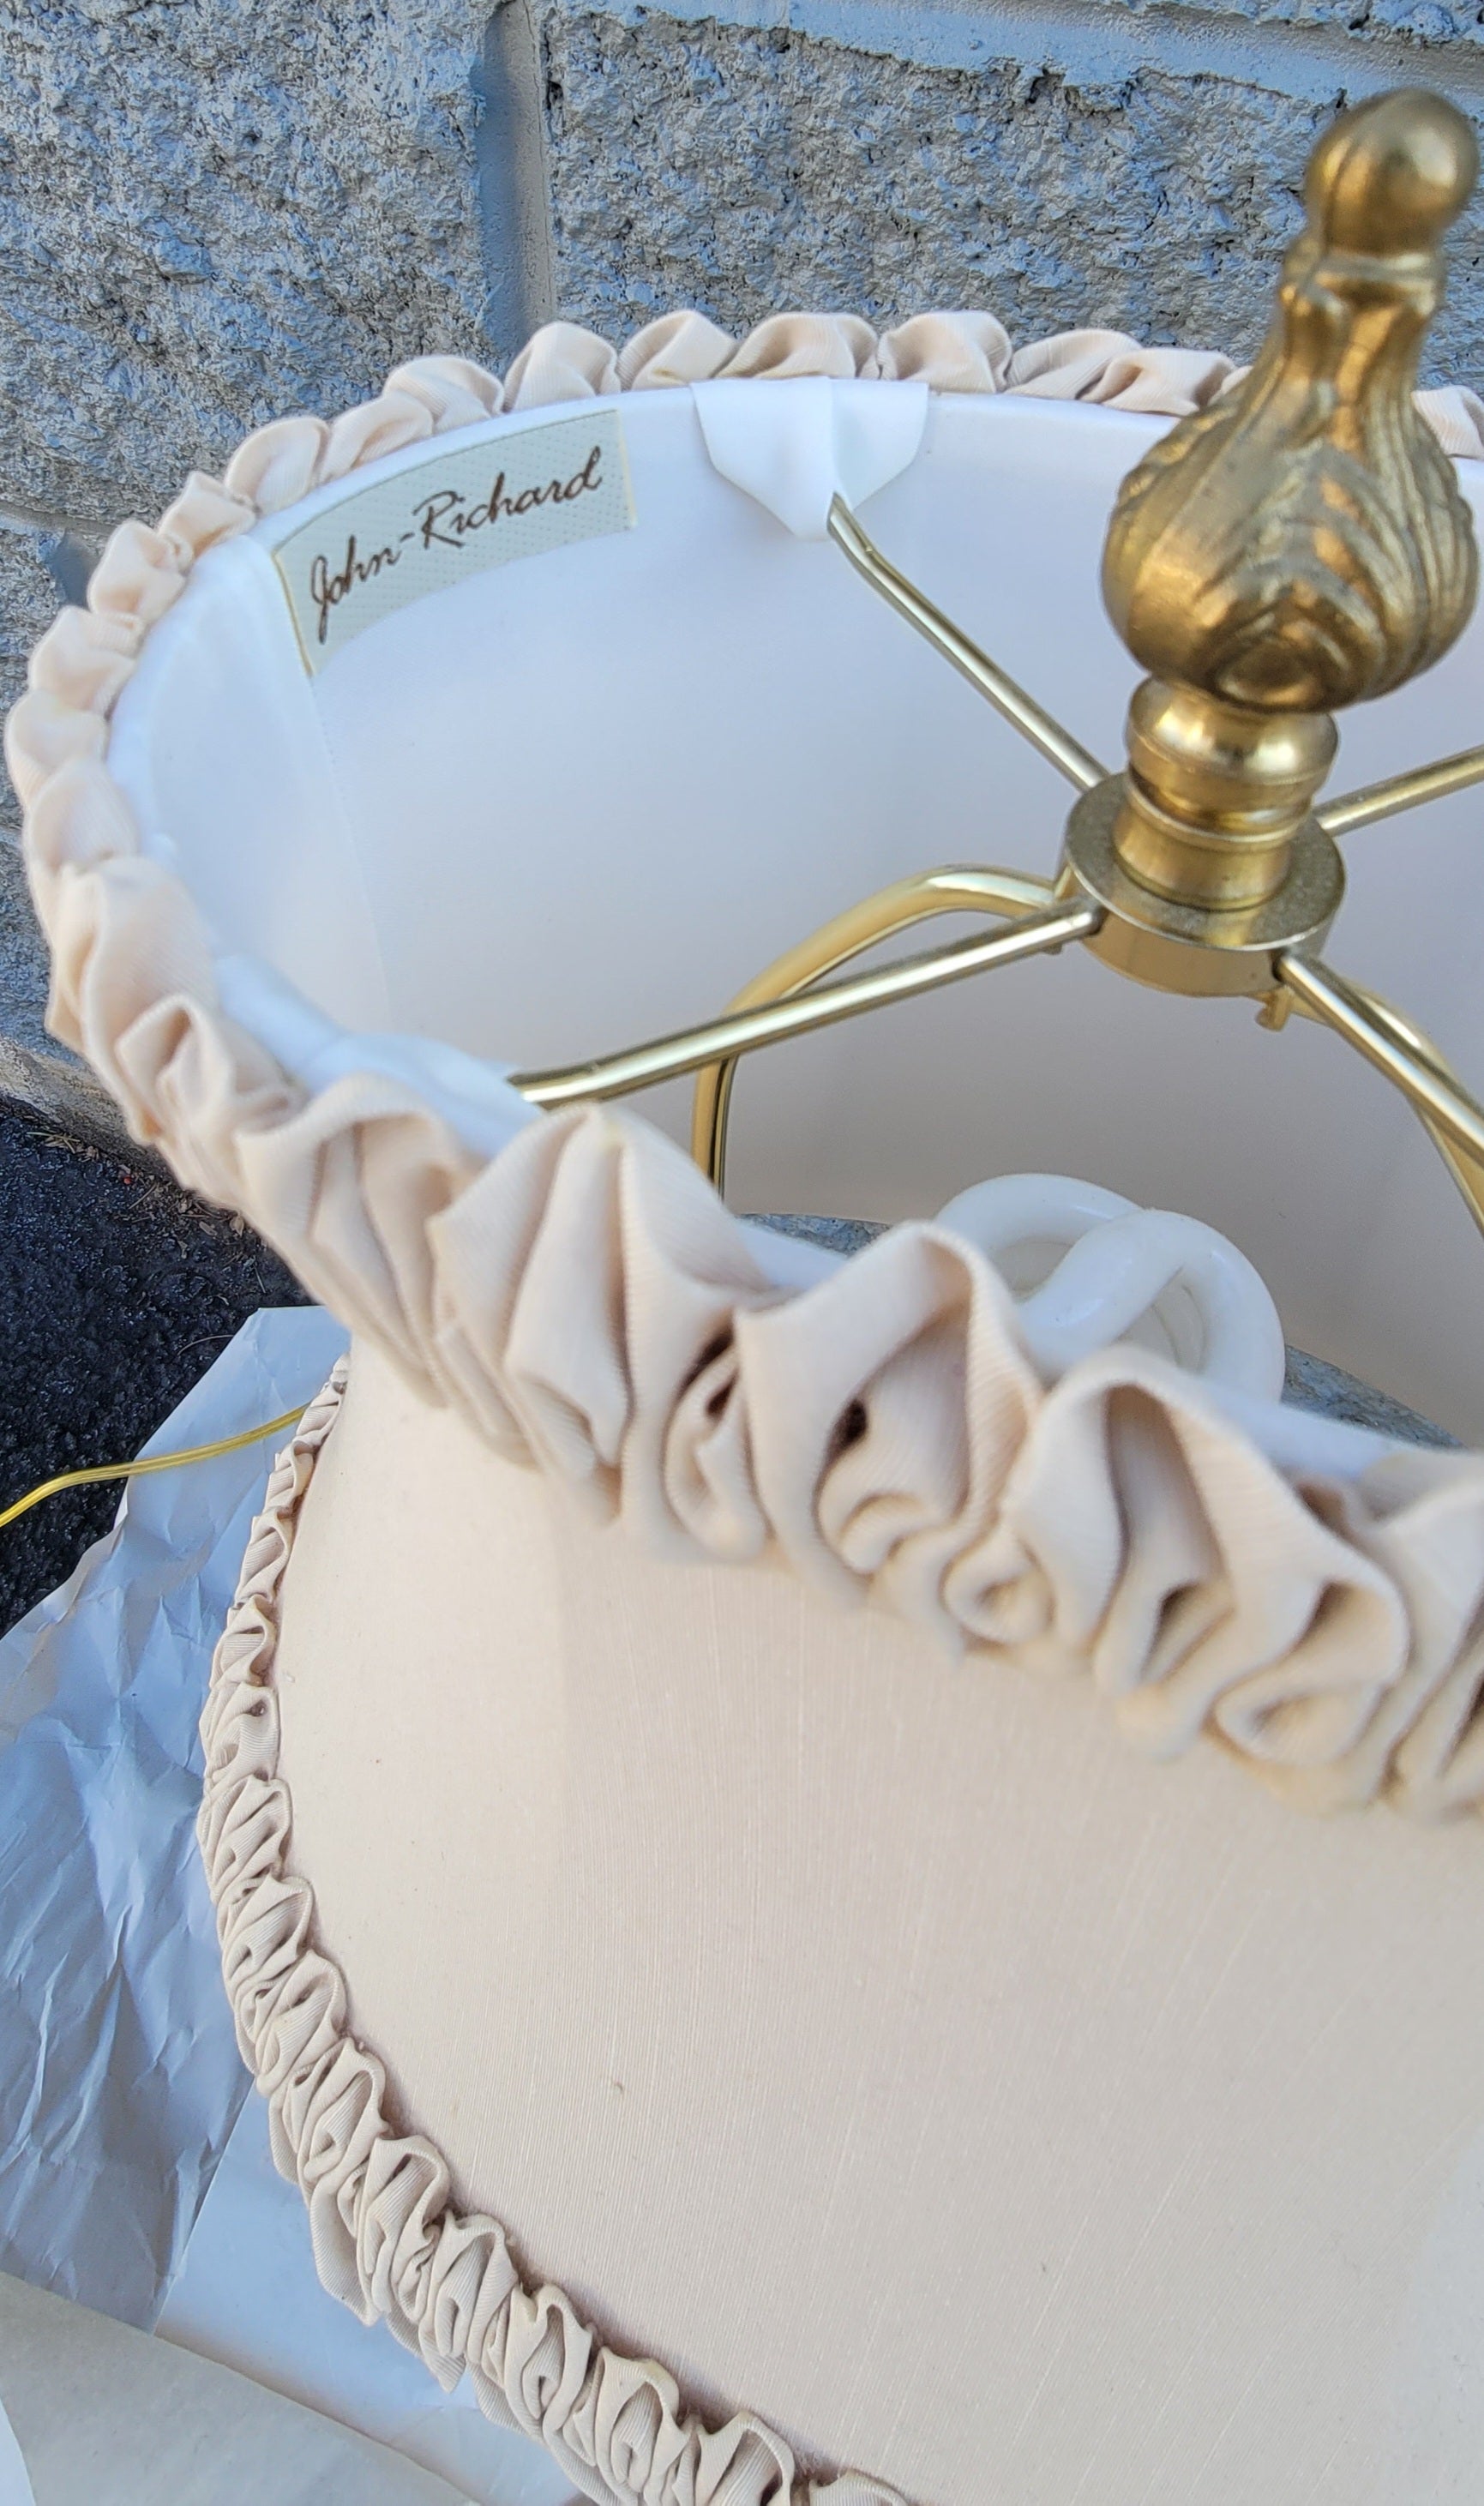 Une exquise lampe de table John Richard en plâtre doré orné de trophées avec abat-jour original. Sculpture en plâtre complexe avec des feuilles d'acanthe et de fins ornements géométriques. La table est livrée avec un abat-jour original en soie ovale